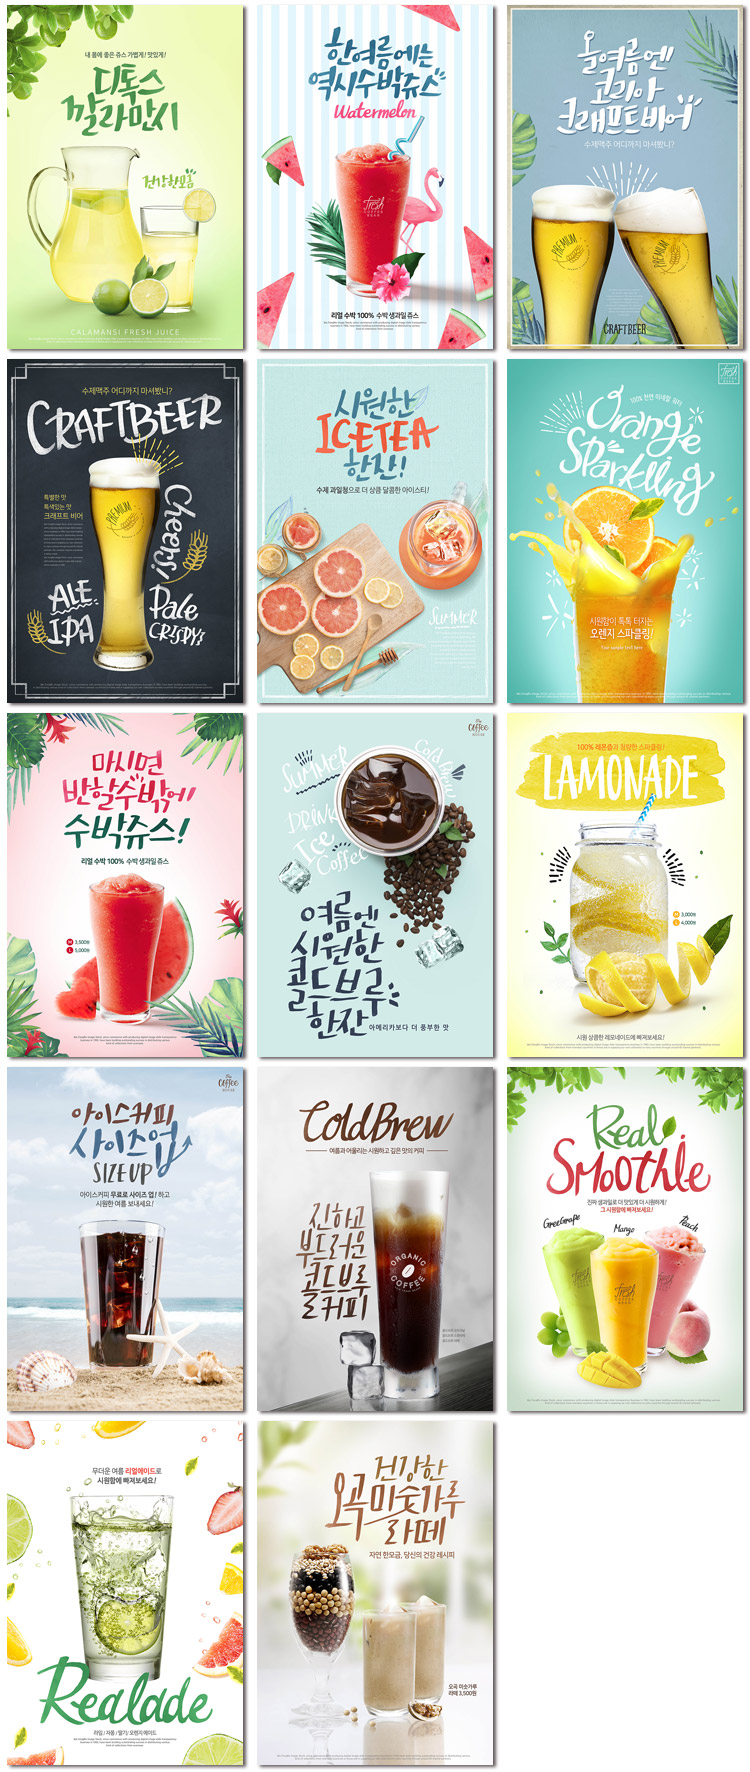 夏天饮品冷饮店奶茶果汁饮料啤酒广告宣传单海报模版psd设计素材